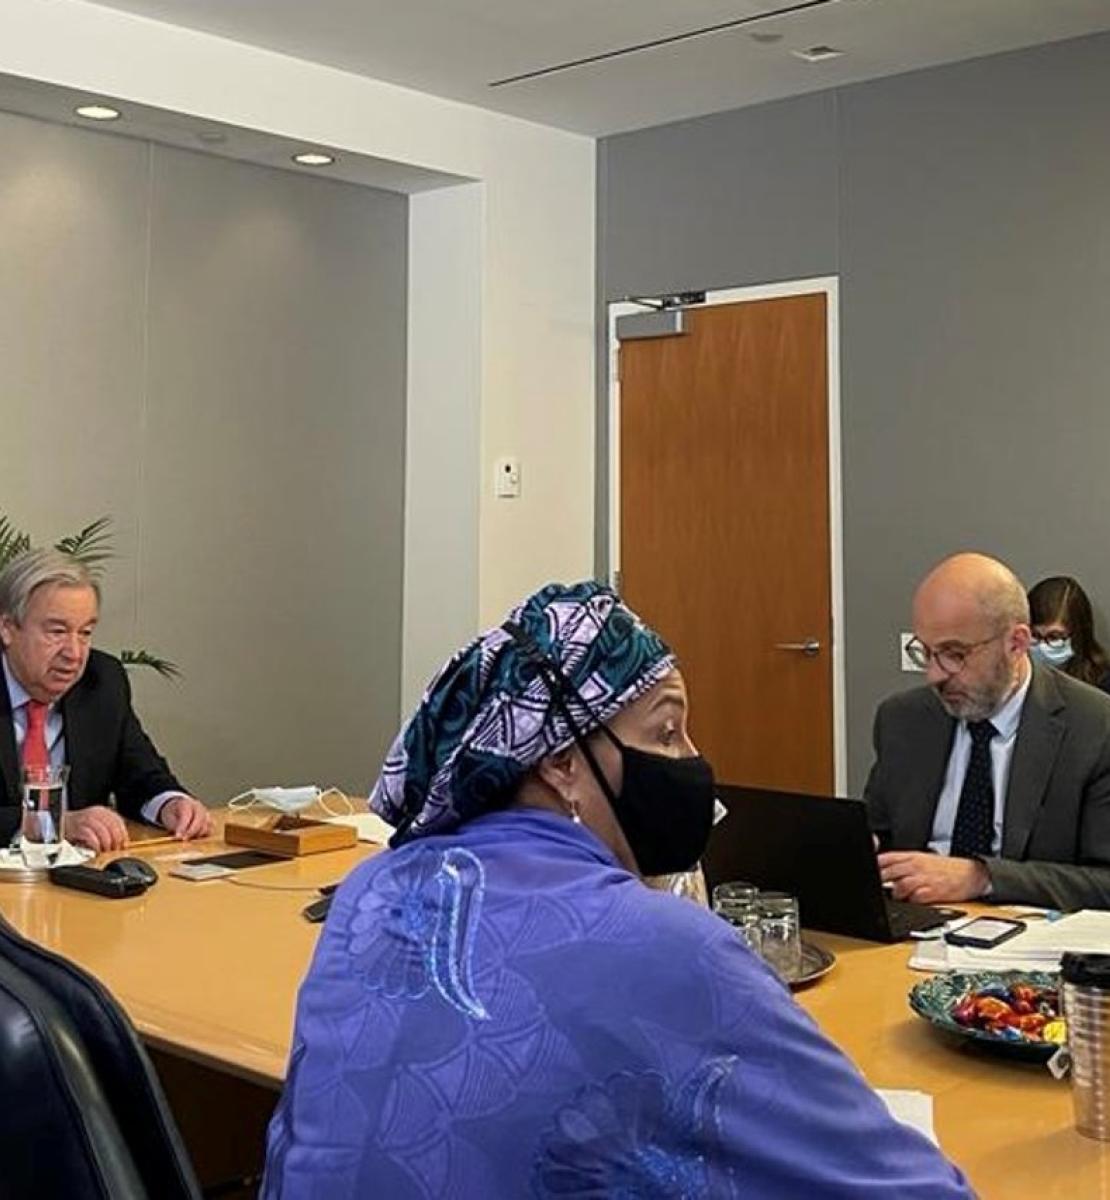 Le Secrétaire général de l’ONU António Guterres, la Vice-Secrétaire générale Amina Mohammed et le Sous-Secrétaire général Robert Piper mènent les débats lors d’une session virtuelle réunissant 130 coordonnateurs/trices résidents/tes et responsables d'entités onusiennes. 